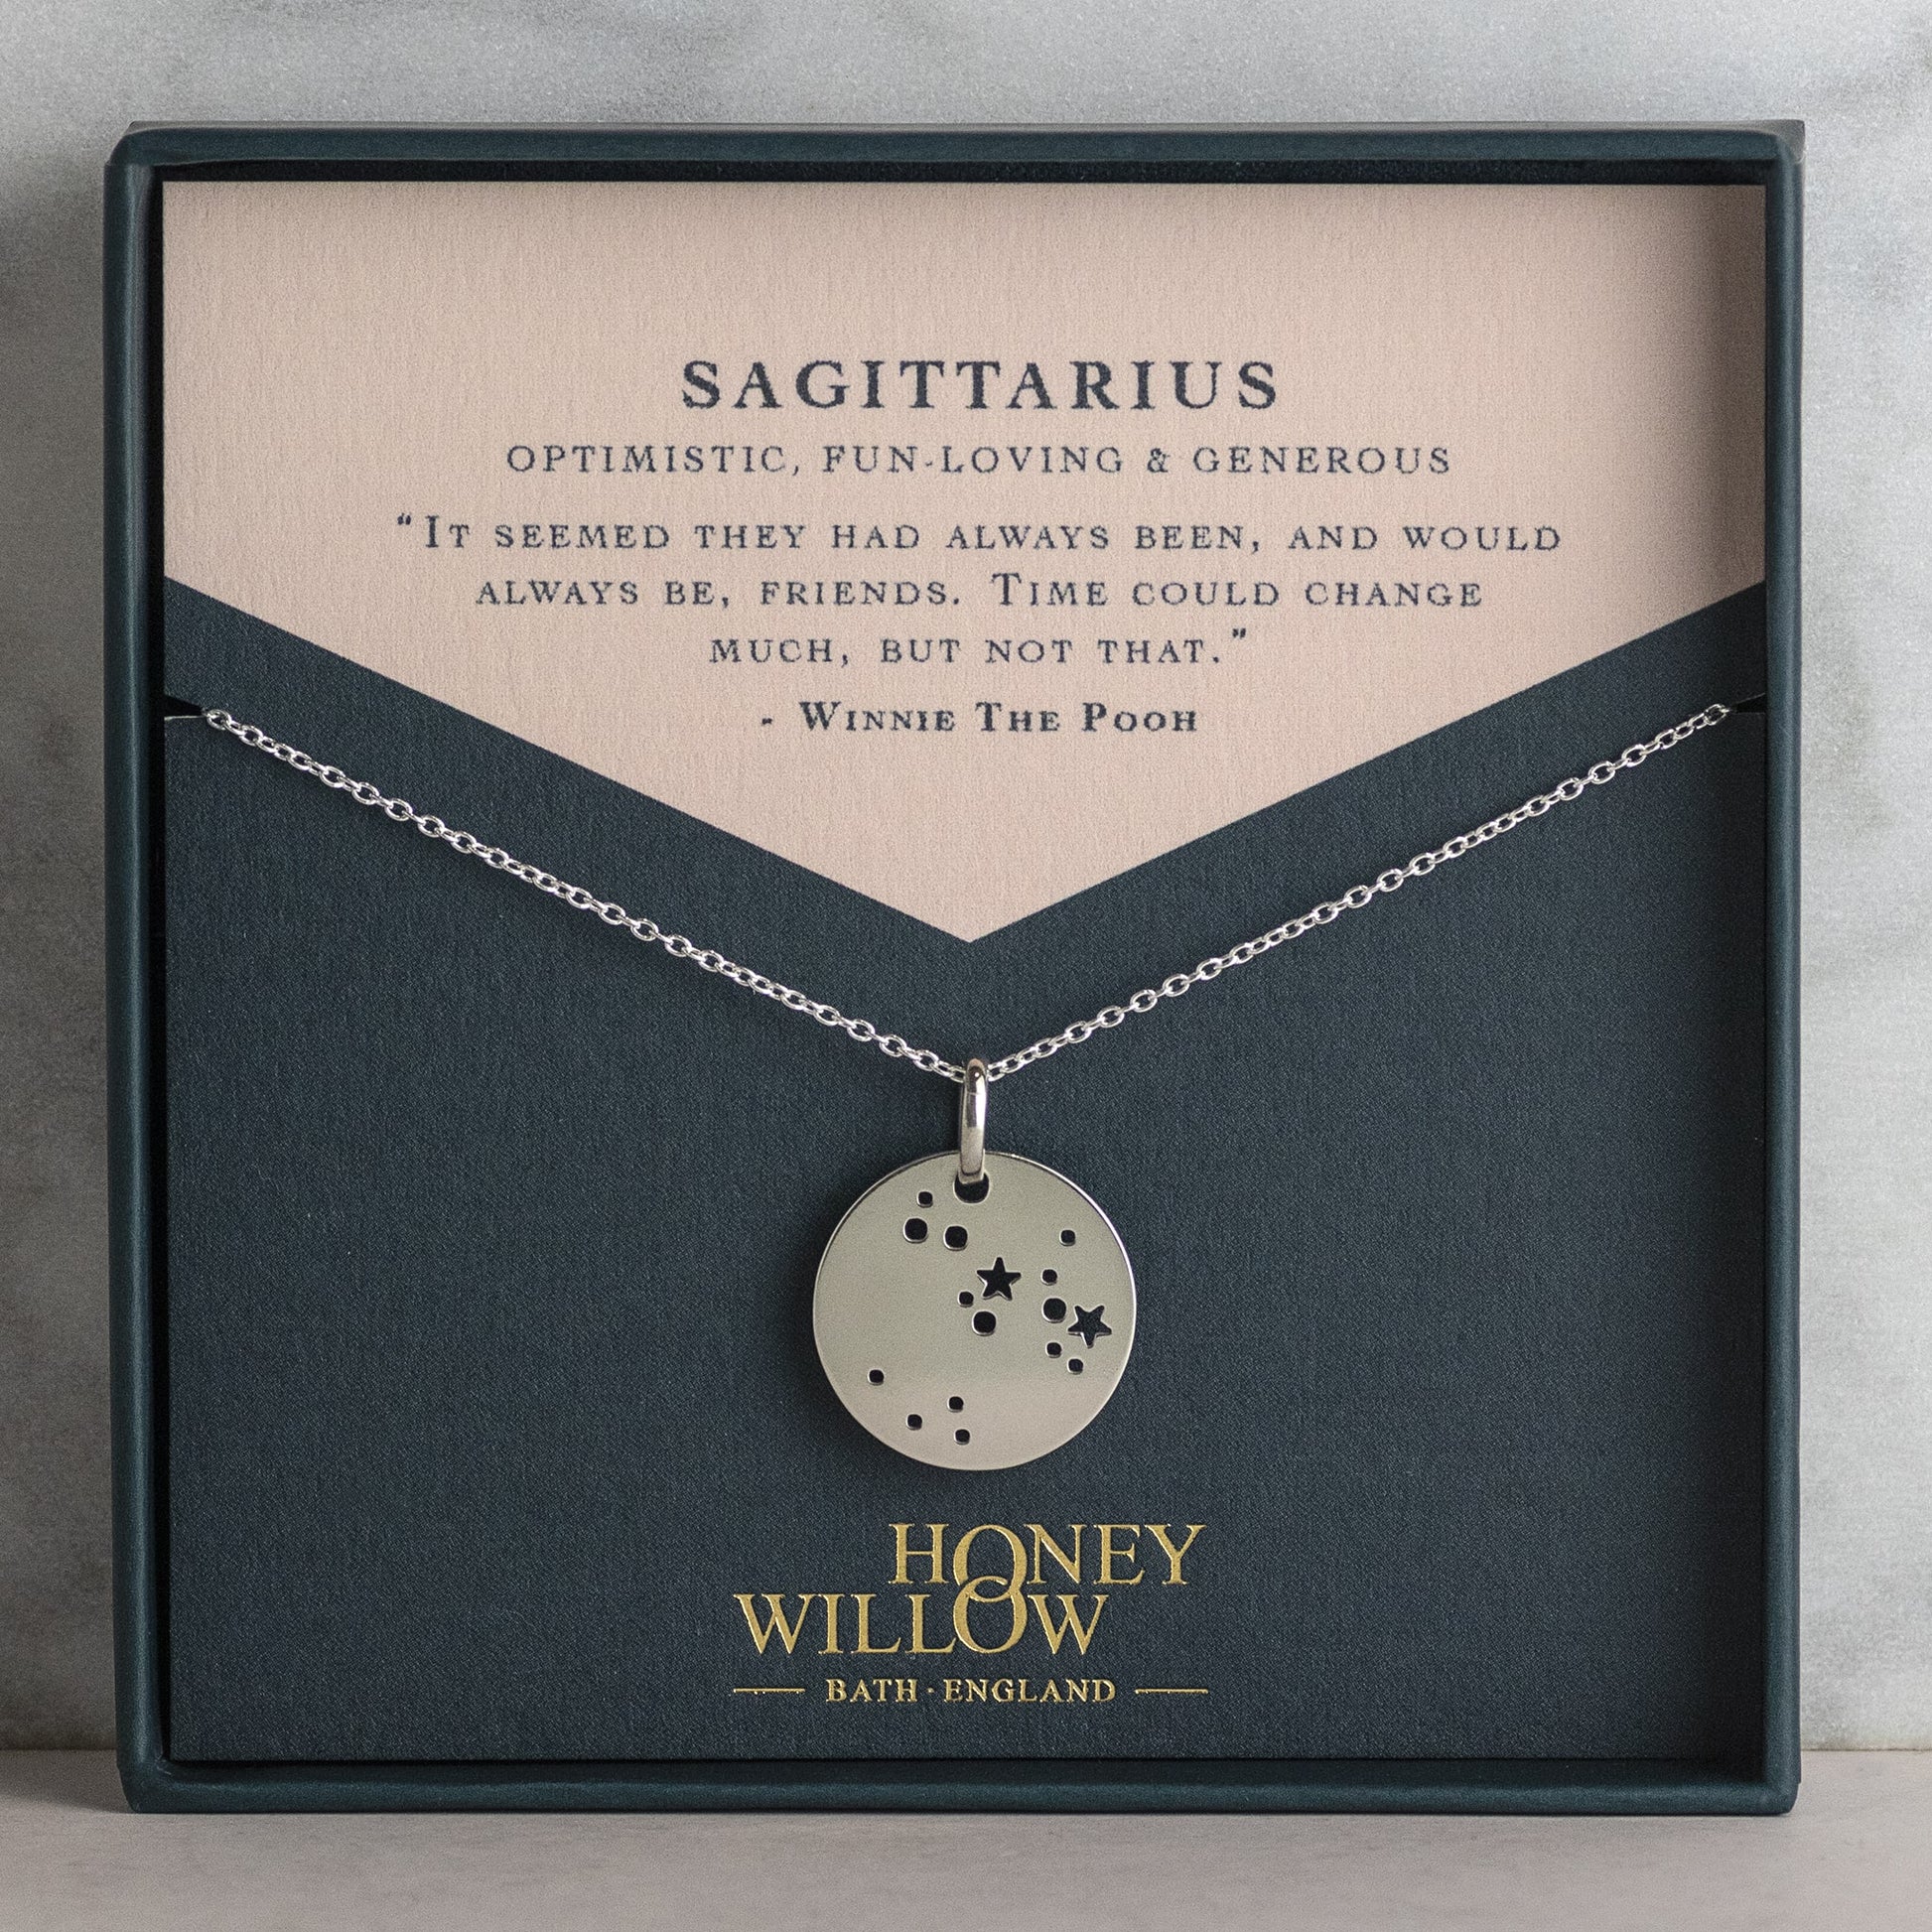 Sagittarius Constellation Necklace